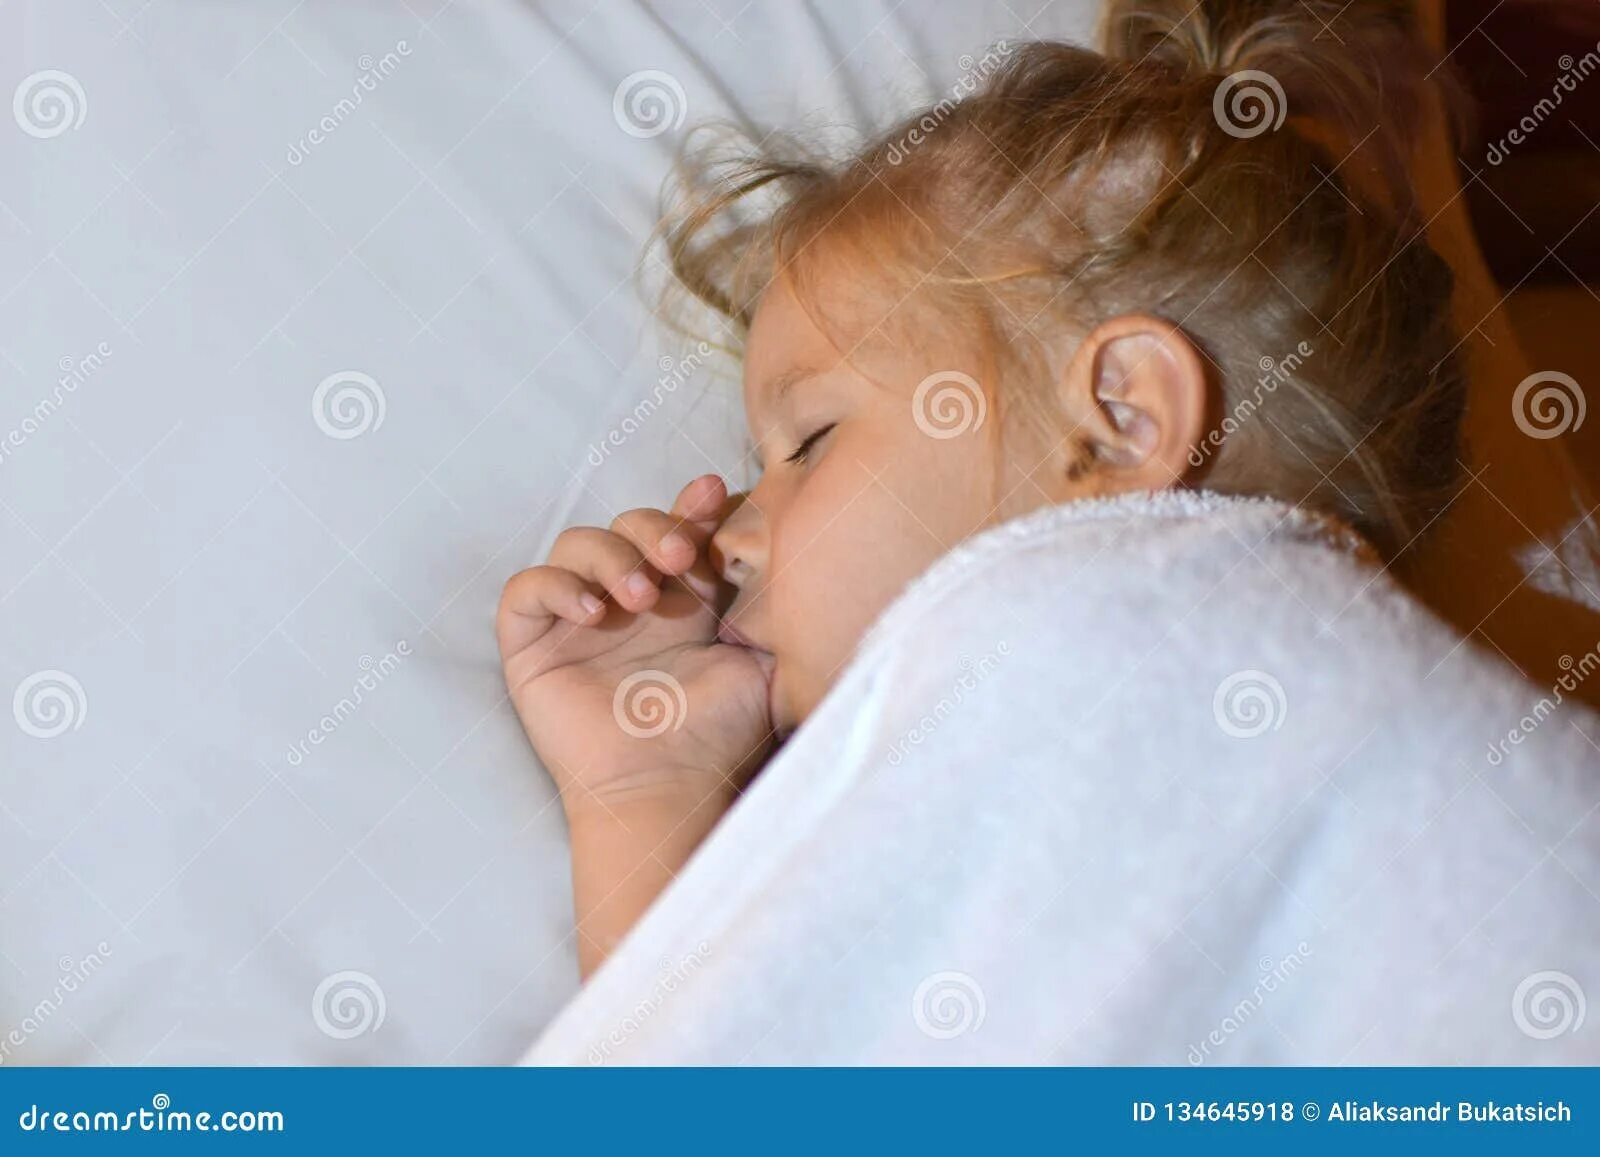 Сосание девочки во сне. Сосание девочки ребенка. Дети с пал цем во рту. Сую пальцы спящей